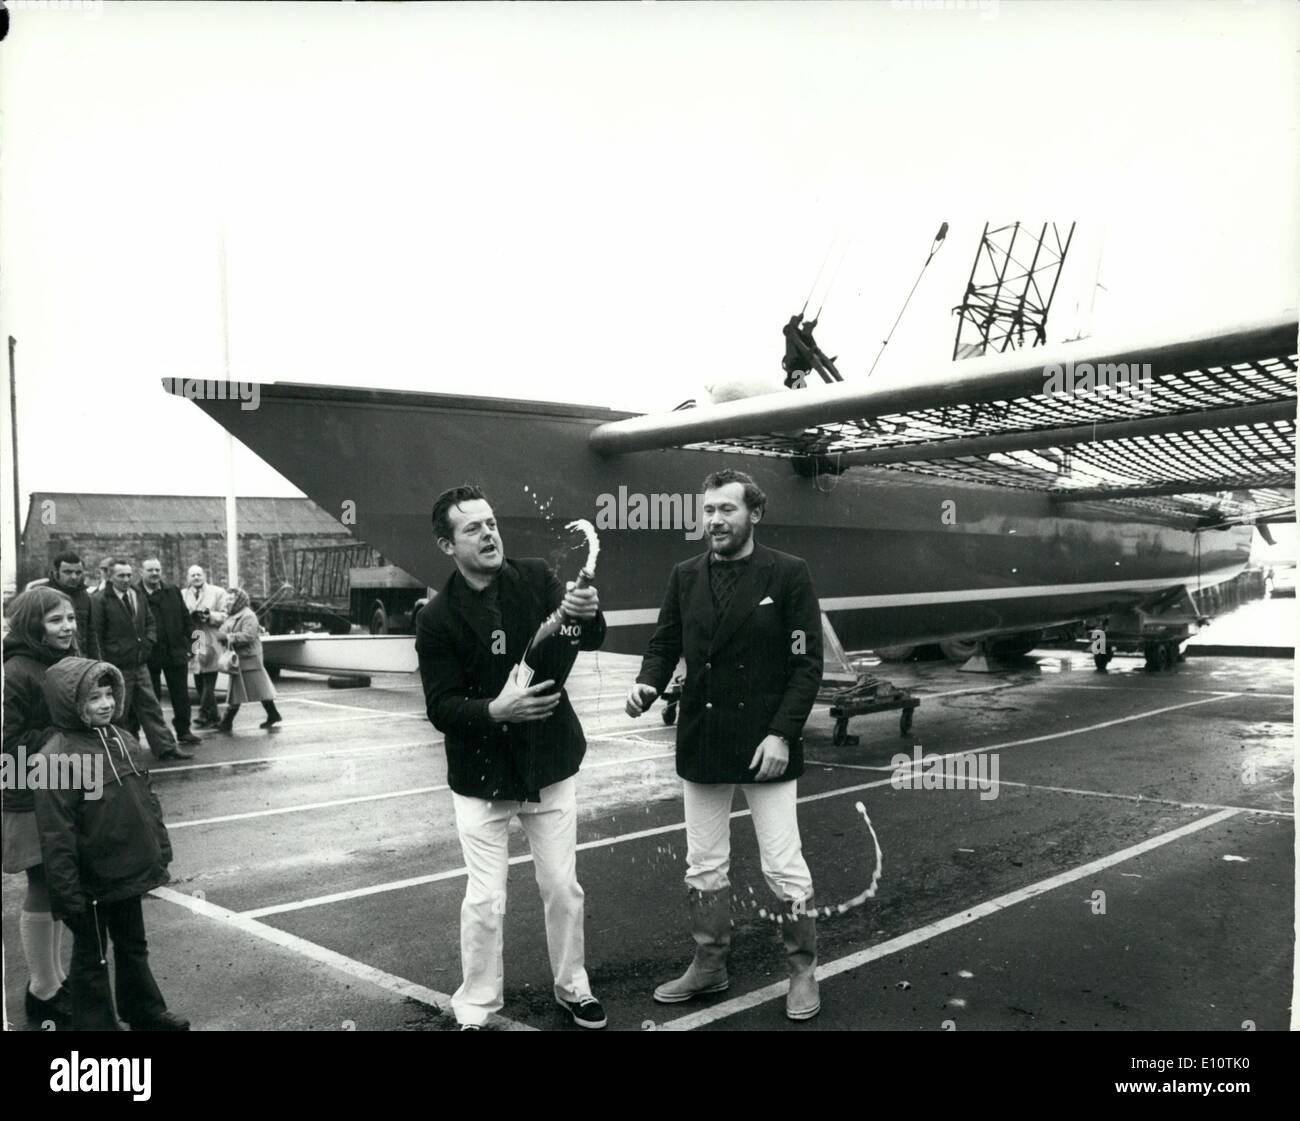 Mar 03, 1974 - più grande del mondo catamarano Racing ha lanciato.: il lancio ha avuto luogo oggi a Brightlingsea. Essex, di tutto il mondo più grande catamarano racing ''Ossigeno britannico''. Lei potrà disputare la 1974 Round - Gran Bretagna gara nelle mani di Gerry Boxall e Robin Knox-Johnson, ed è programmato per il 1976 Single-Handed gara transatlantica. Il 70ft complessivamente, 32ft. fascio craft, è stato progettato da Rod Macalpine-Downie, ed è il primo centure per essere supportato dal British sfidanti, associazione di grandi imprese e di persone formate per supportare British International sforzo sportivo Foto Stock